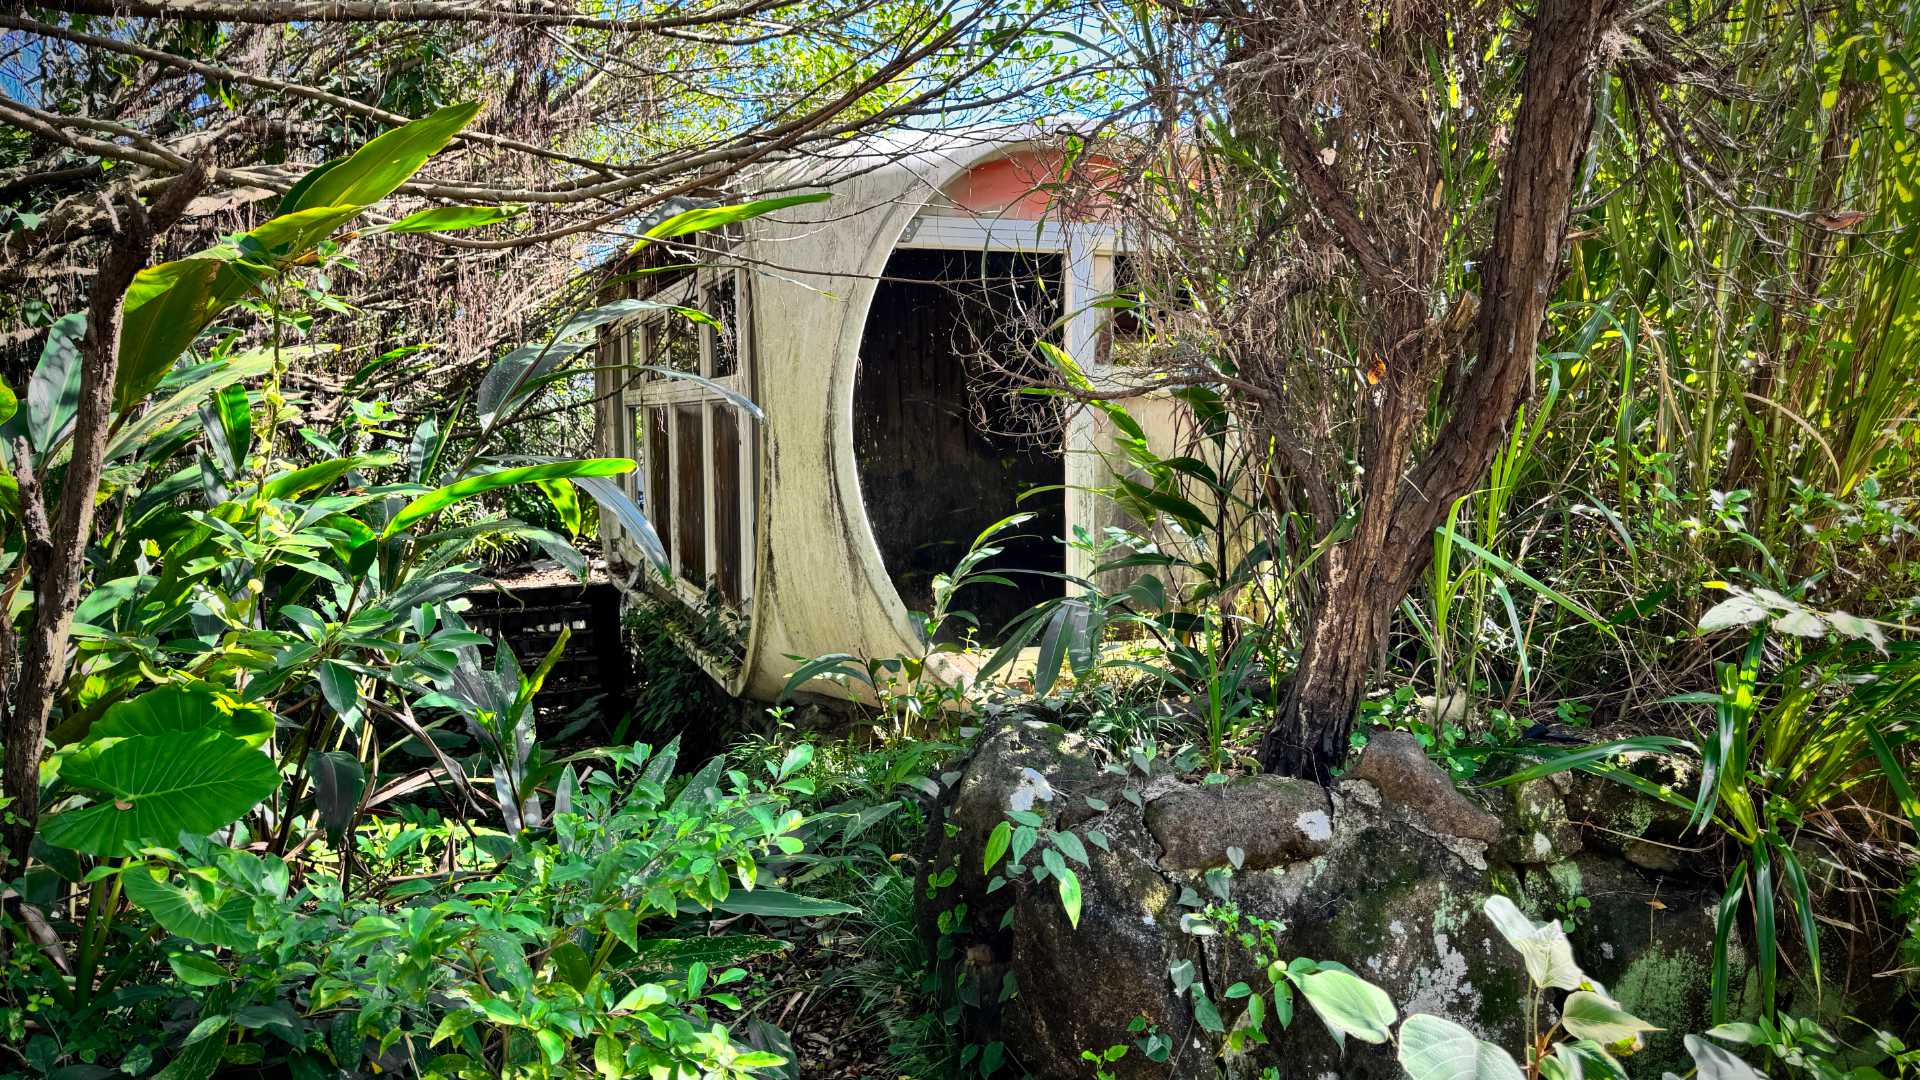 A derilect Venturo house in a jungle.